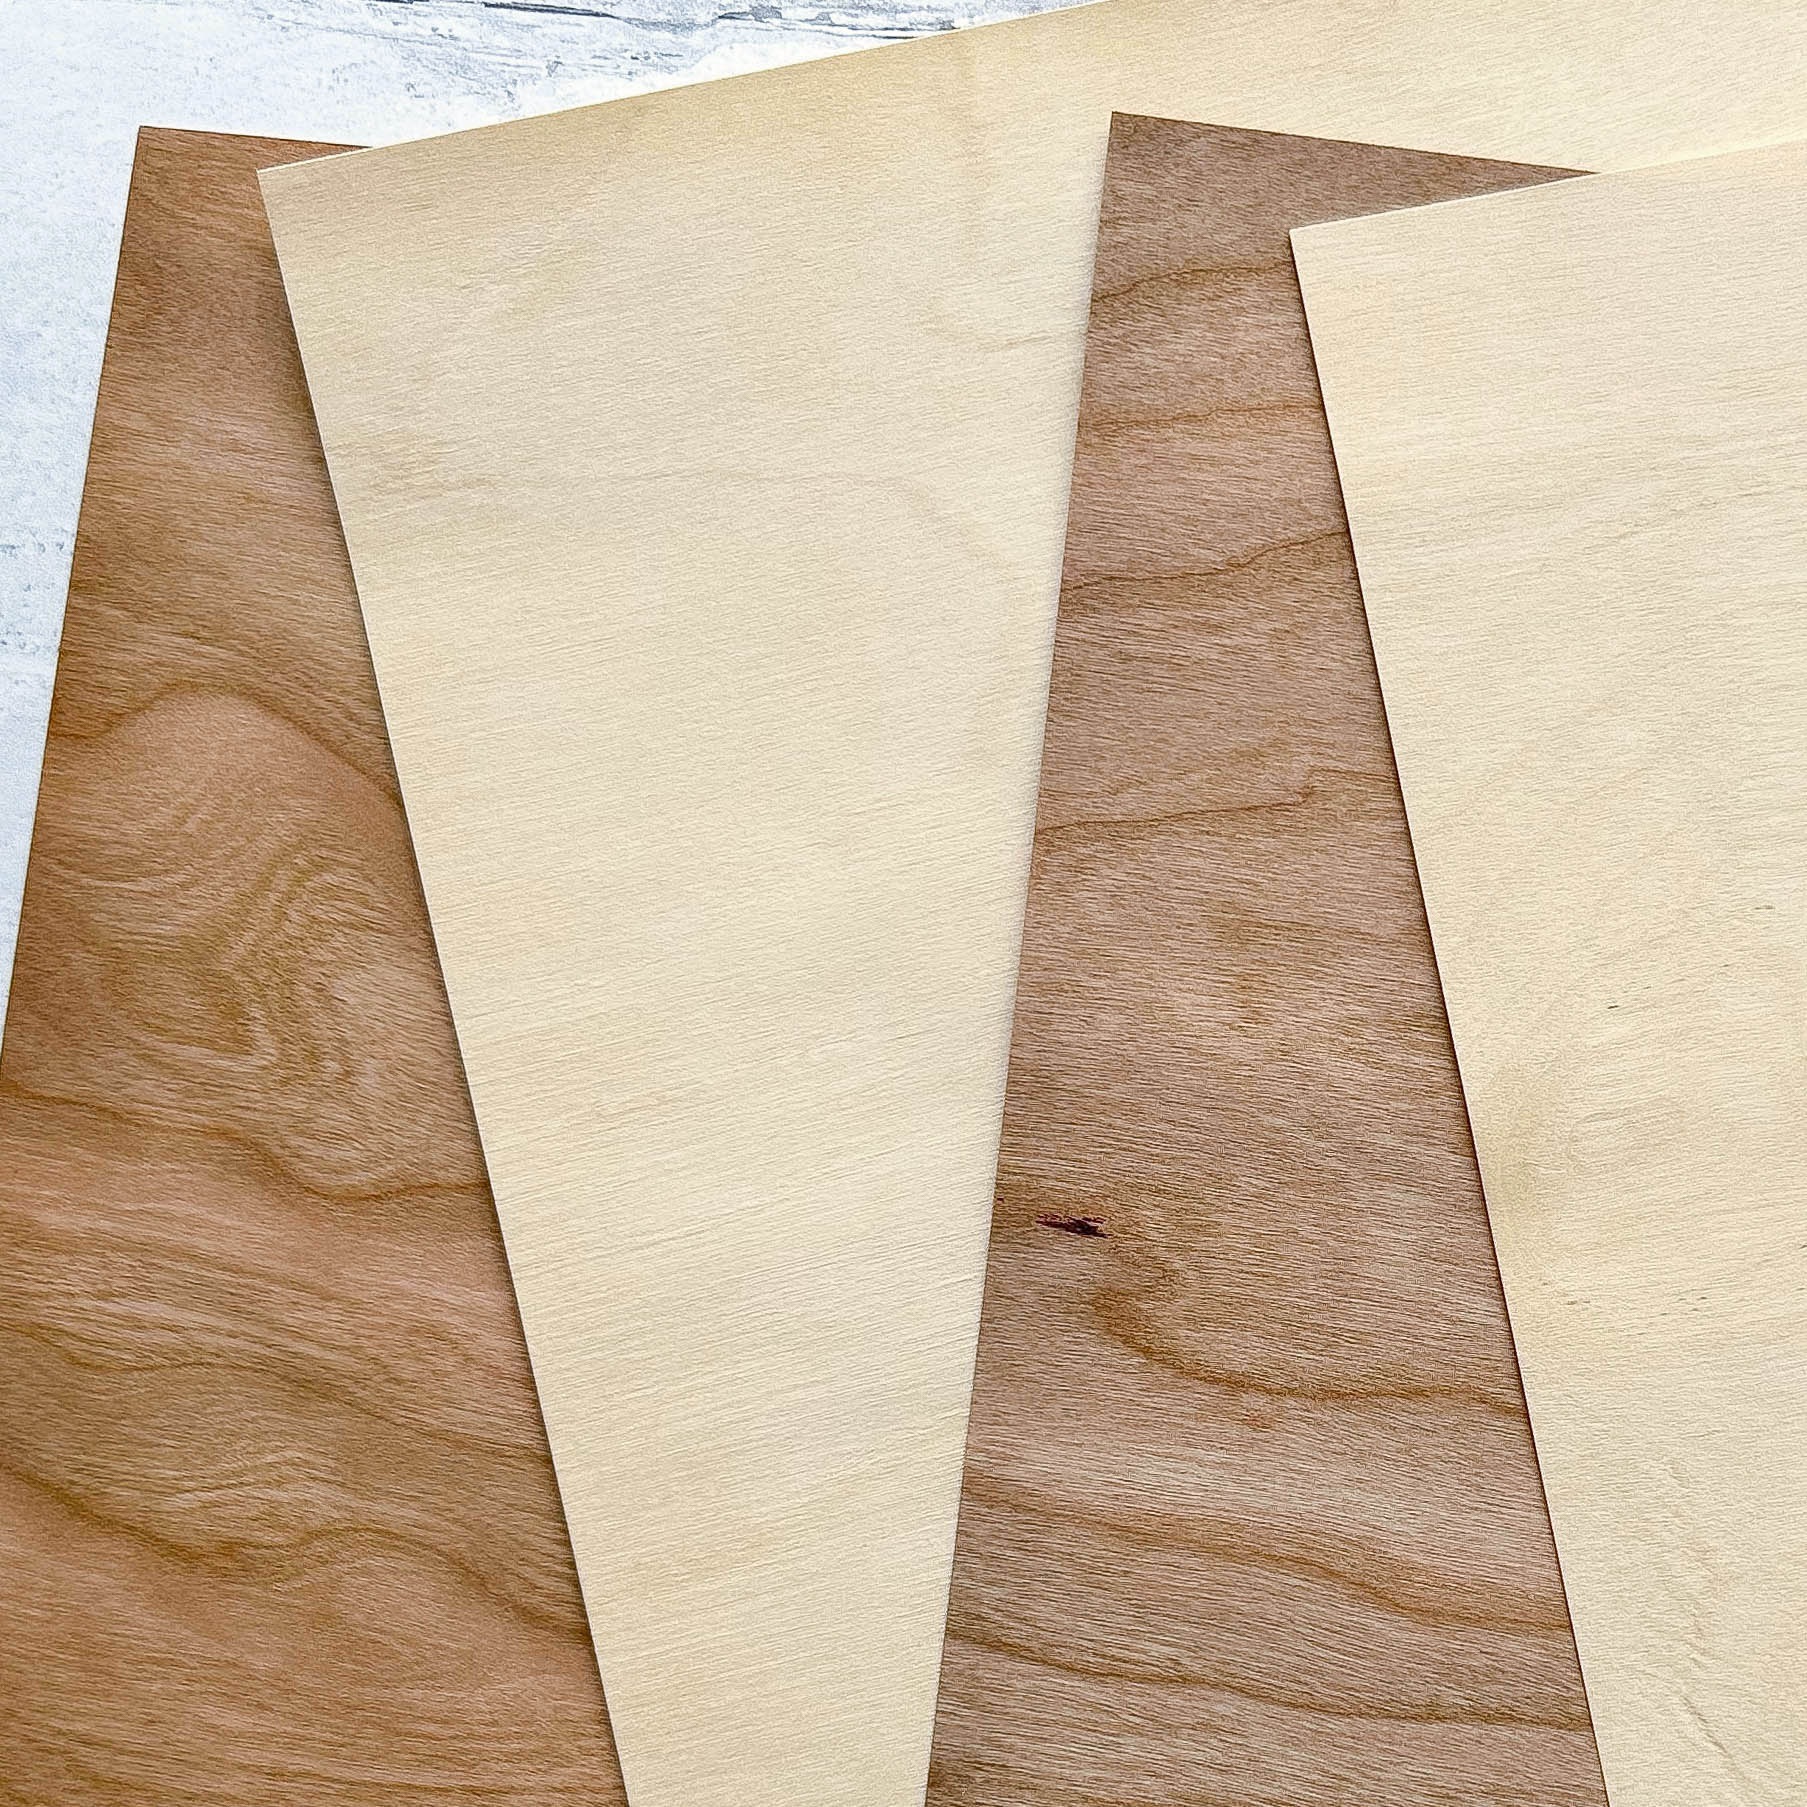 Wood Veneer Cardstock Paper, Single Sheet Samples